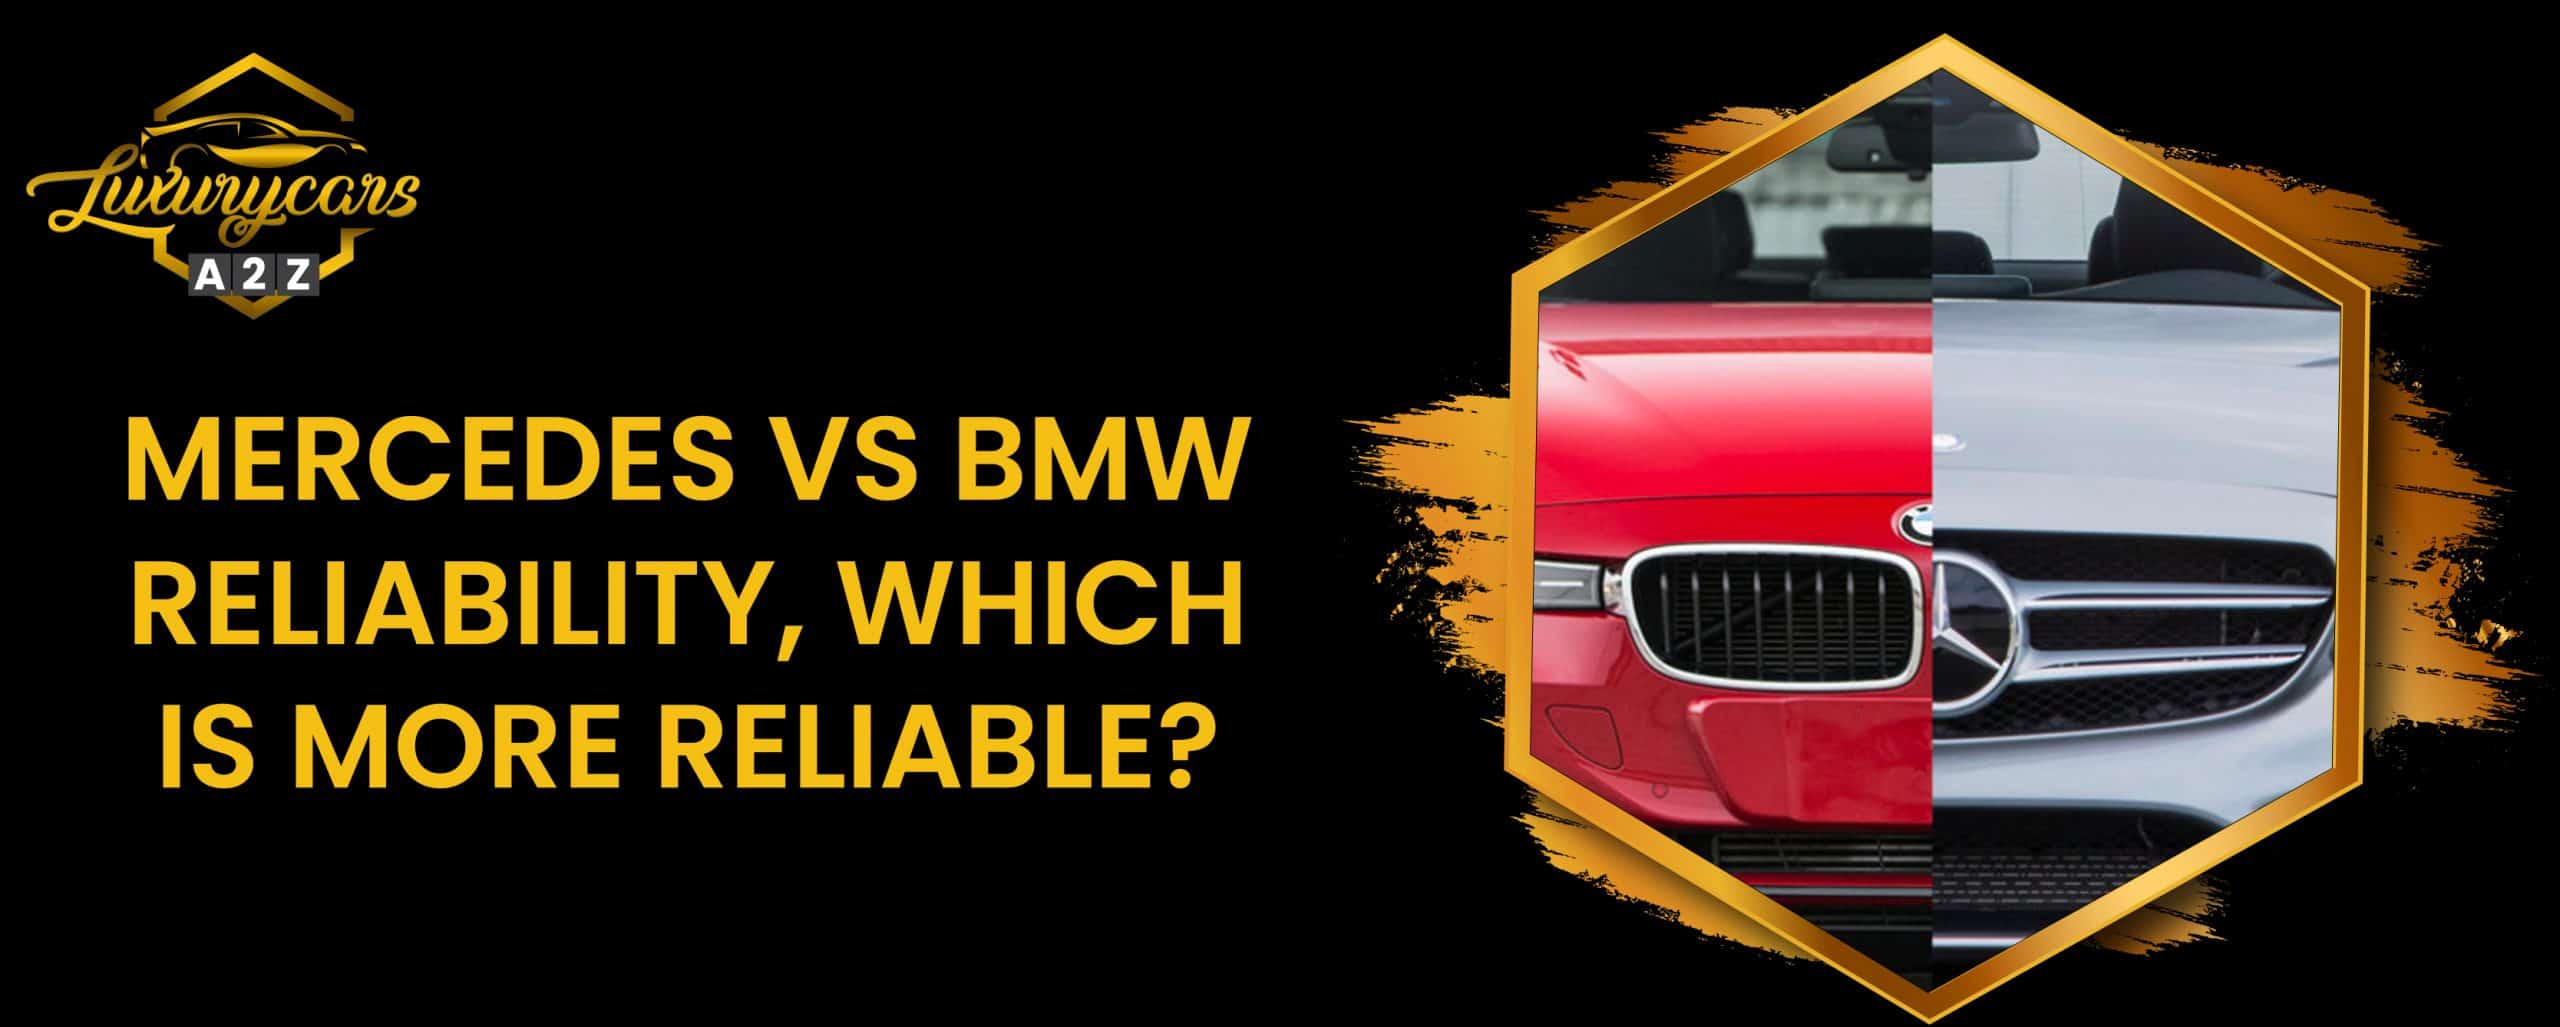 La fiabilité de Mercedes contre celle de BMW, laquelle est la plus fiable ?